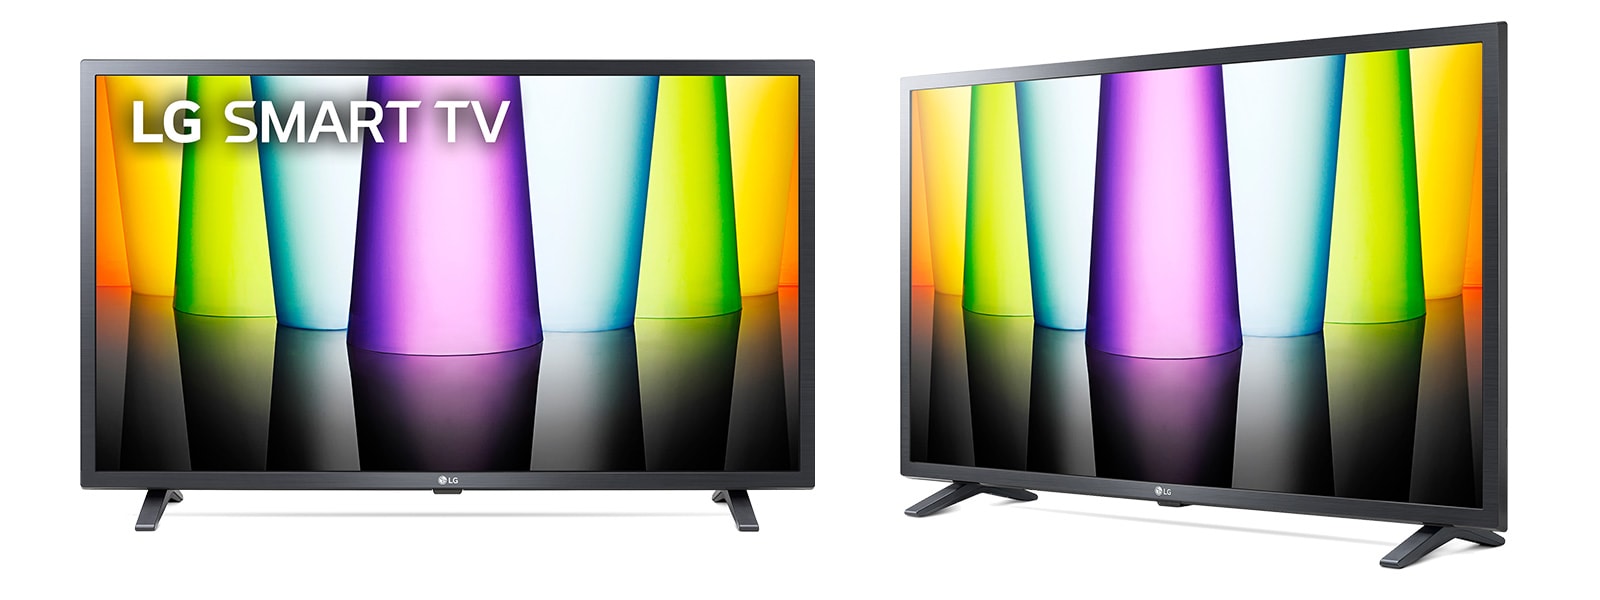 LG Smart TV 32LN570B デジタルハイビジョン液晶テレビ32型 - テレビ